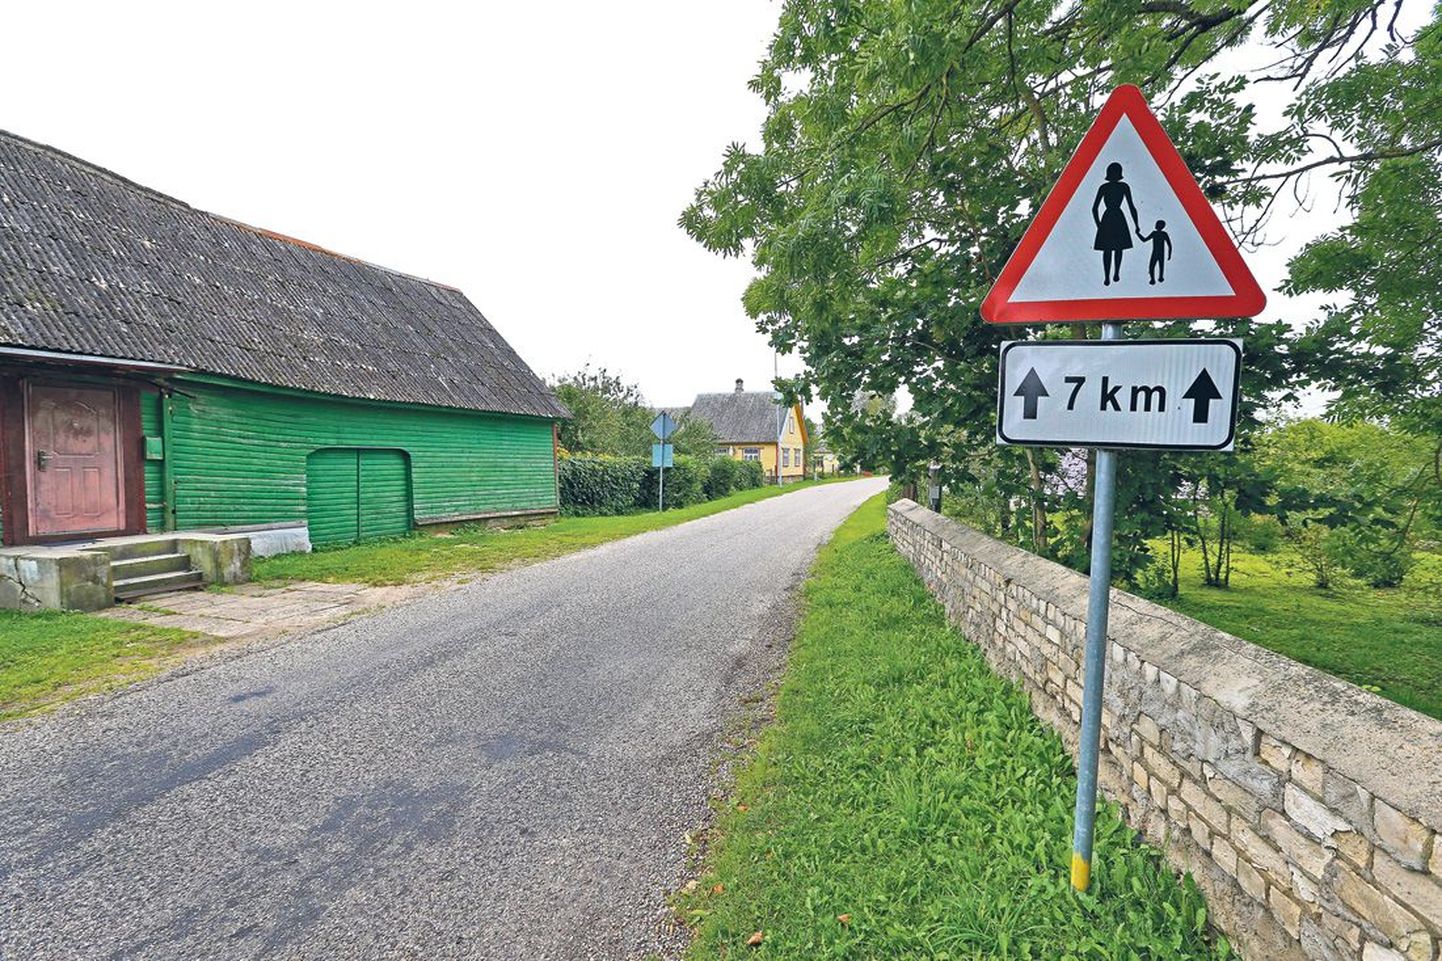 Varnja küla alguses hoiatab märk, et teel võivad liikuda ka jalakäijad. Ometi võib seal arendada kuni poolesajakilomeetrist kiirust.